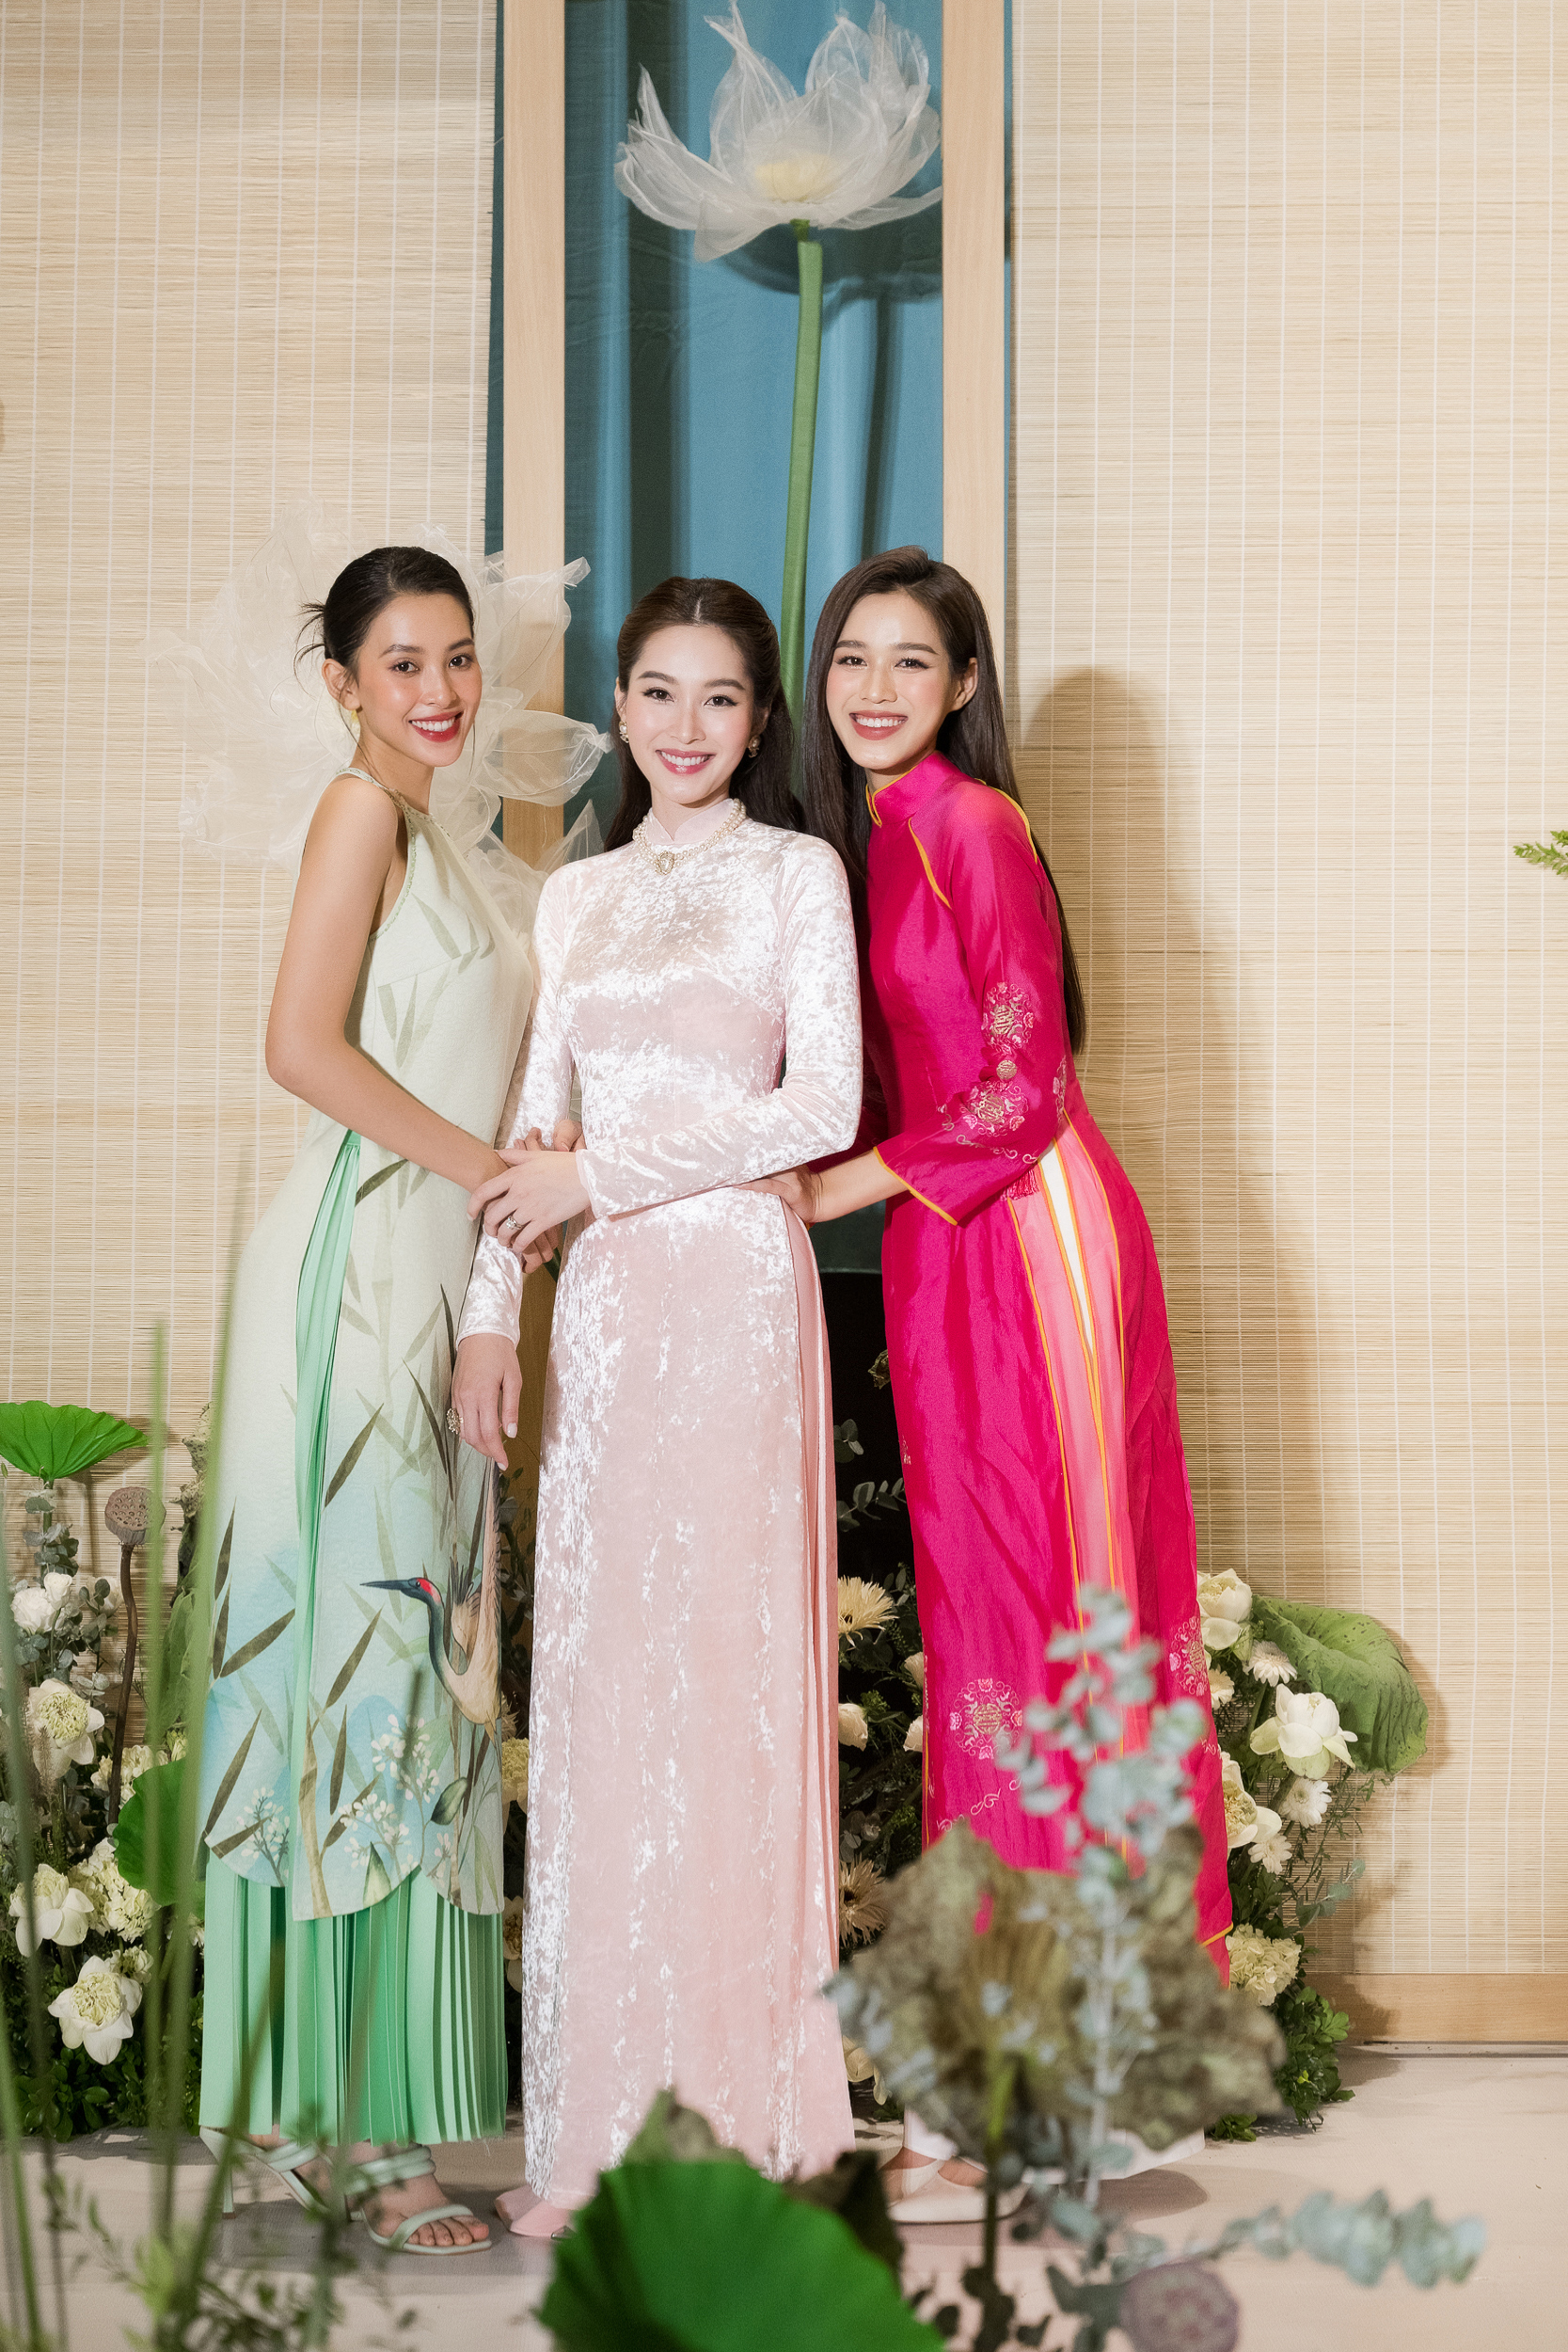 Áo dài: Áo dài là một trong những trang phục truyền thống đẹp nhất của người Việt Nam. Nếu bạn yêu thích trang phục truyền thống này, hãy xem hình ảnh những bộ áo dài tuyệt đẹp để choáng ngợp trước vẻ đẹp của chúng.